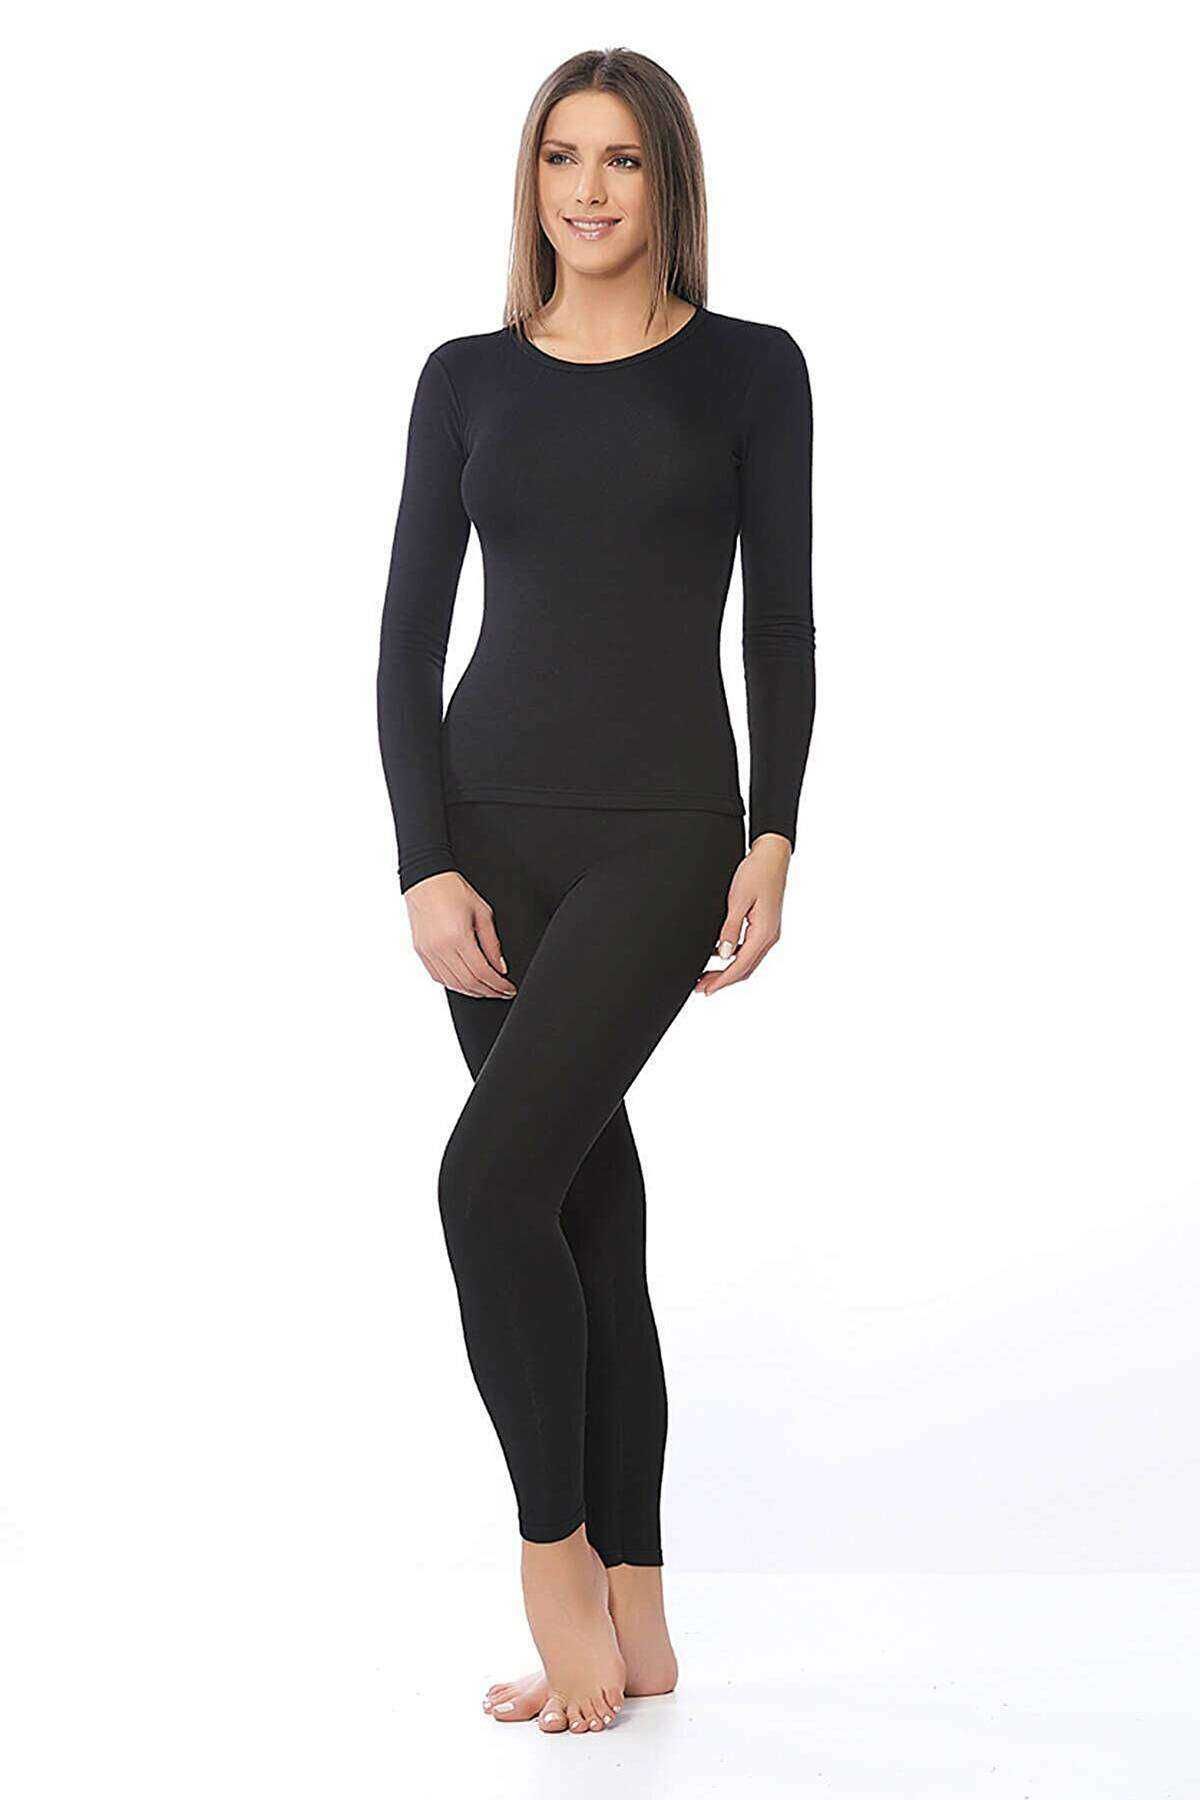 Kadın Kışlık Termal Sıcak Tutan Tayt Fanila Takım Set Siyah - XL